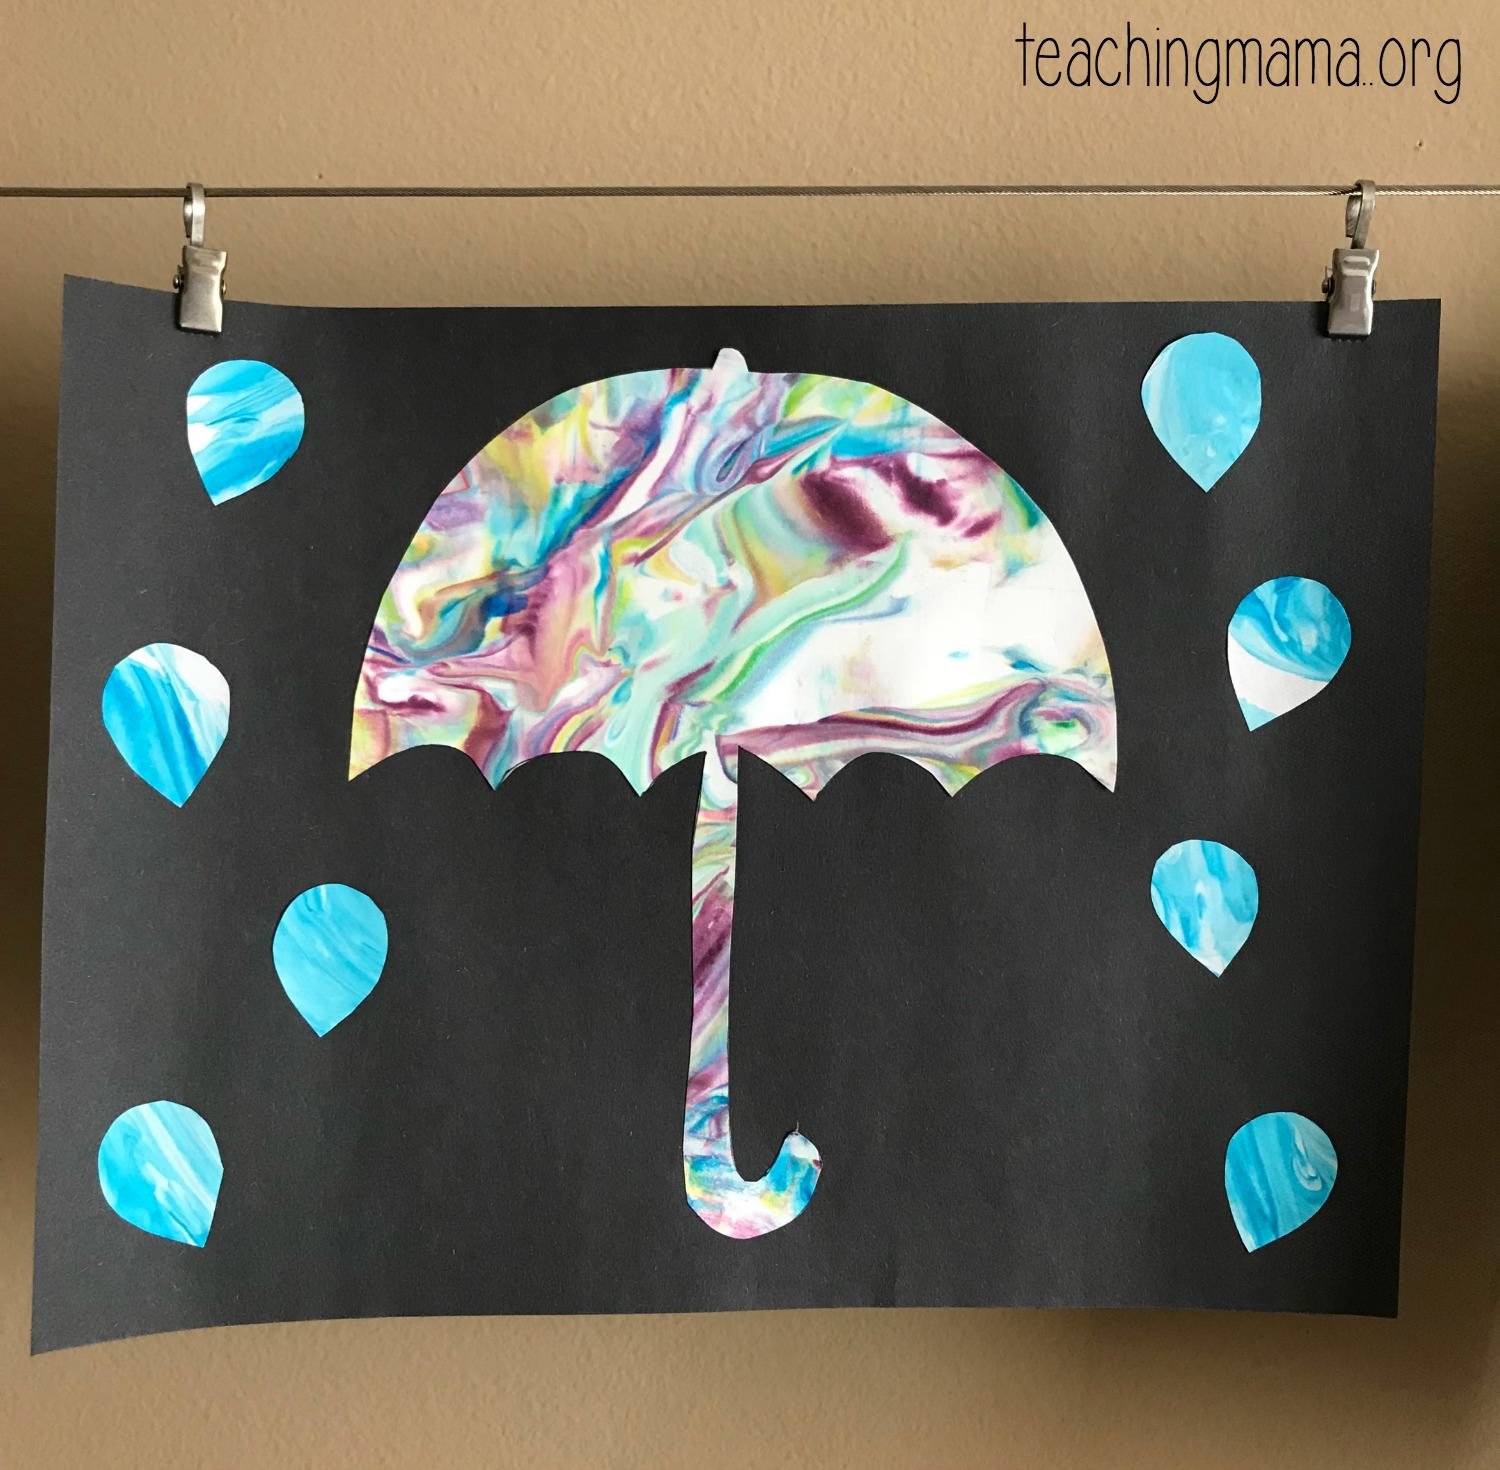 umbrella craft using construction paper, shaving cream, and paint.